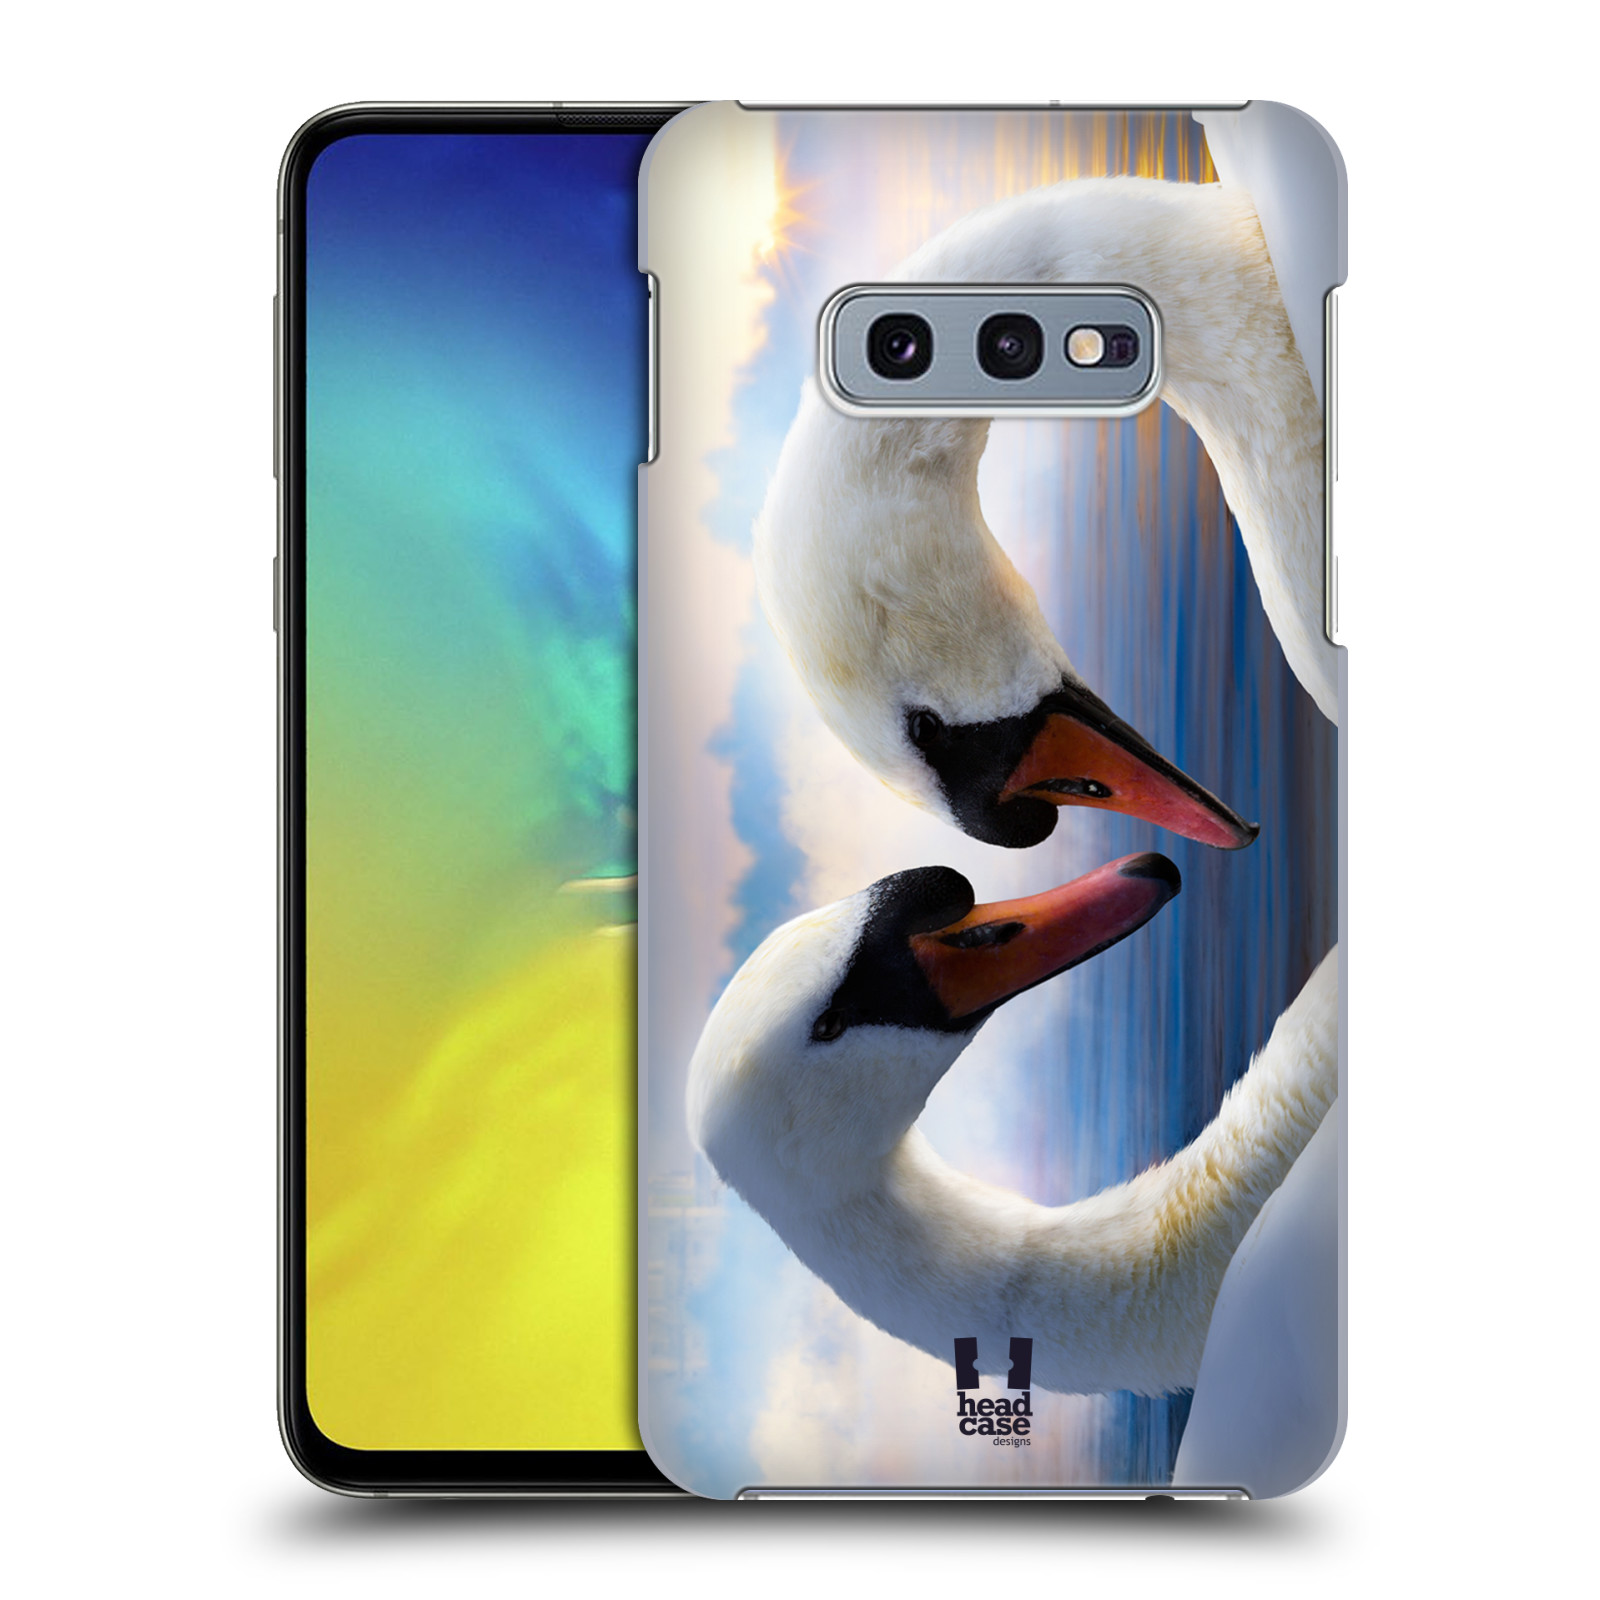 Pouzdro na mobil Samsung Galaxy S10e - HEAD CASE - vzor Divočina, Divoký život a zvířata foto ZAMILOVANÉ LABUTĚ, LÁSKA